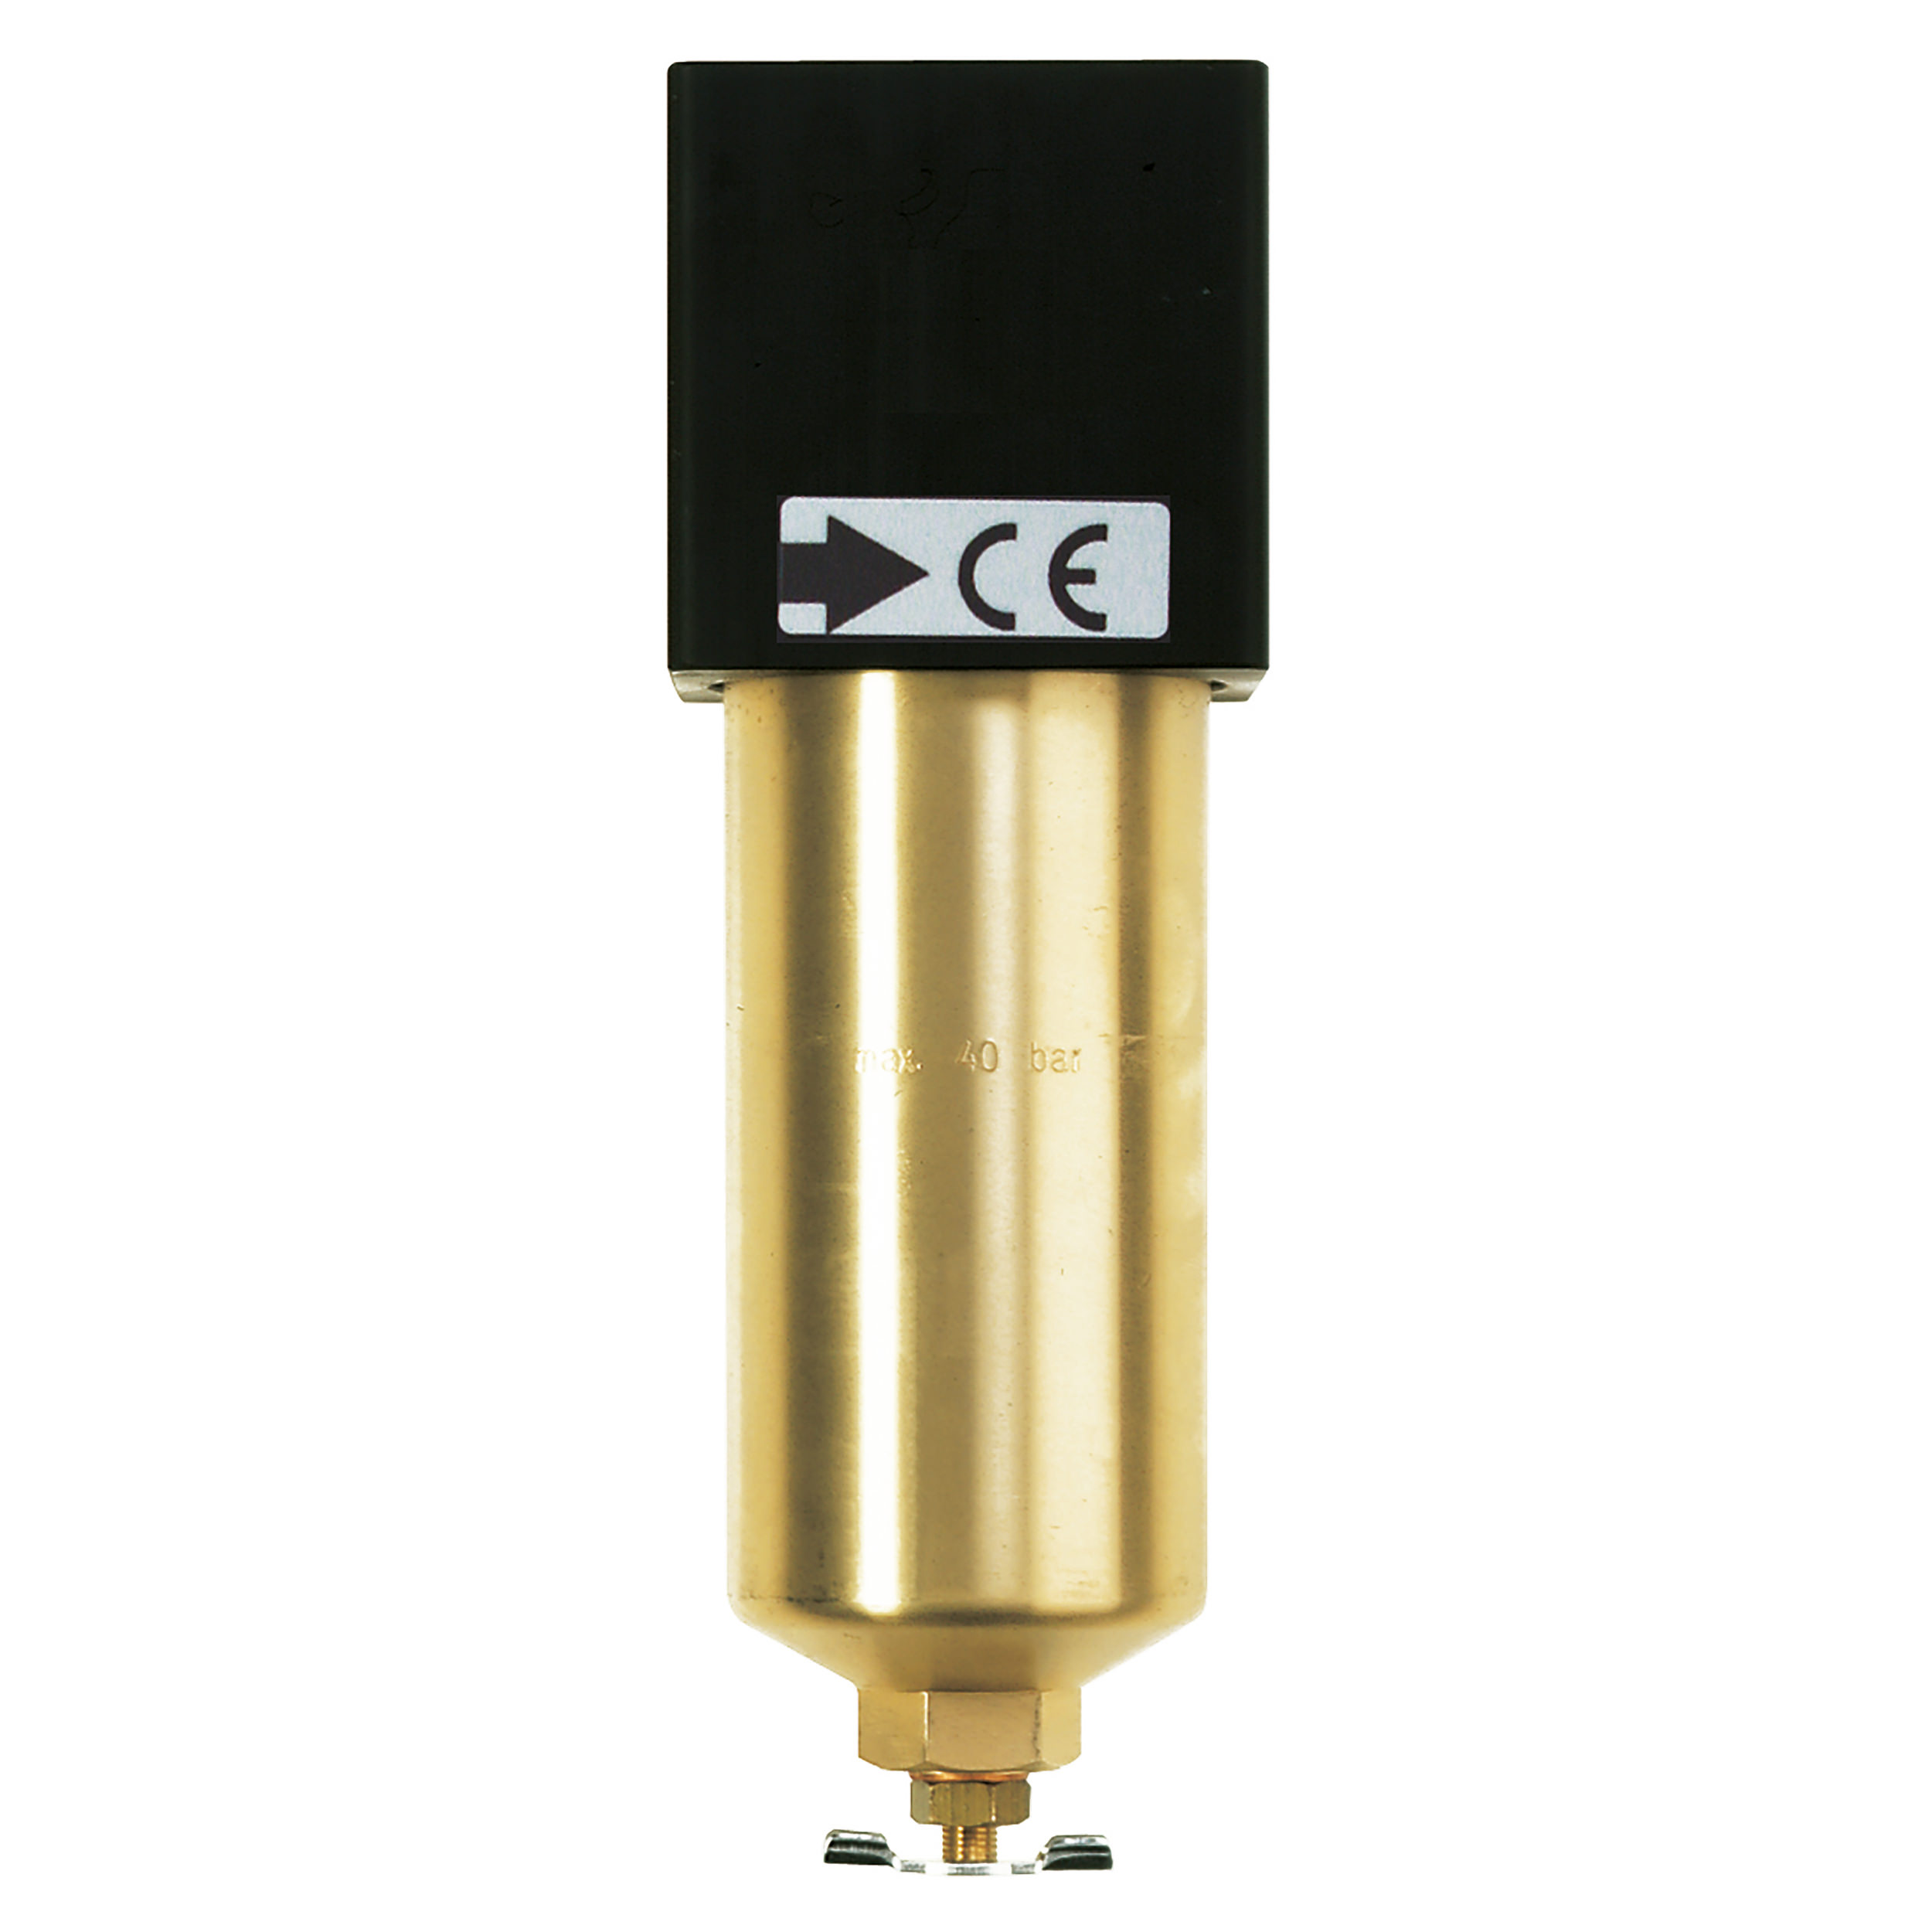 Mikrofilter standard, 40 bar, BG 40, G½, Metallbehälter, Handablassventil